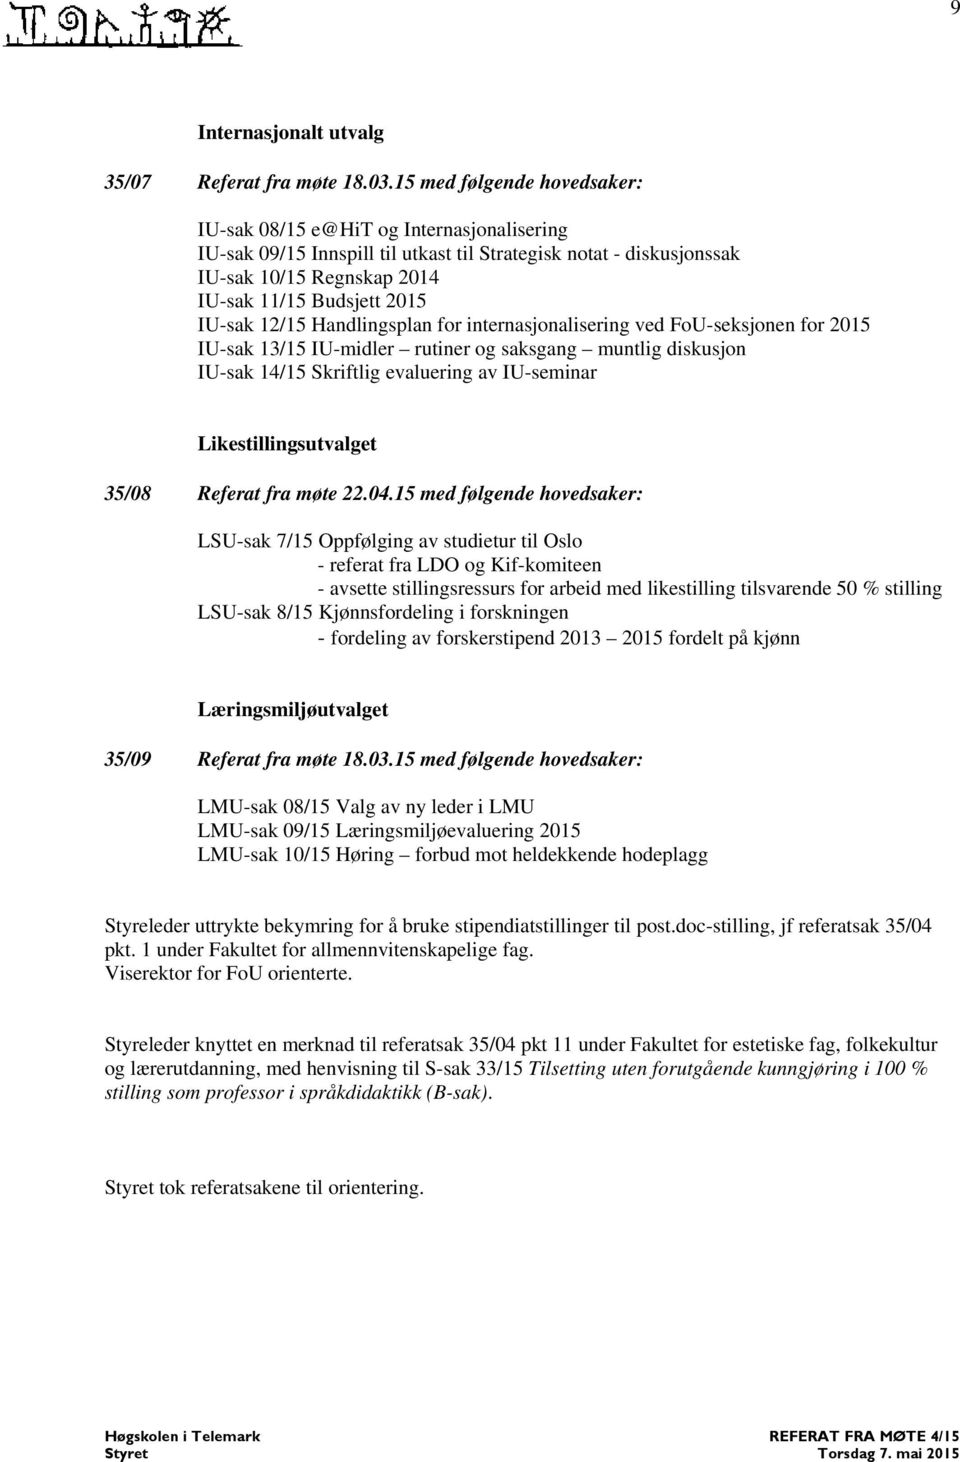 IU-sak 12/15 Handlingsplan for internasjonalisering ved FoU-seksjonen for 2015 IU-sak 13/15 IU-midler rutiner og saksgang muntlig diskusjon IU-sak 14/15 Skriftlig evaluering av IU-seminar